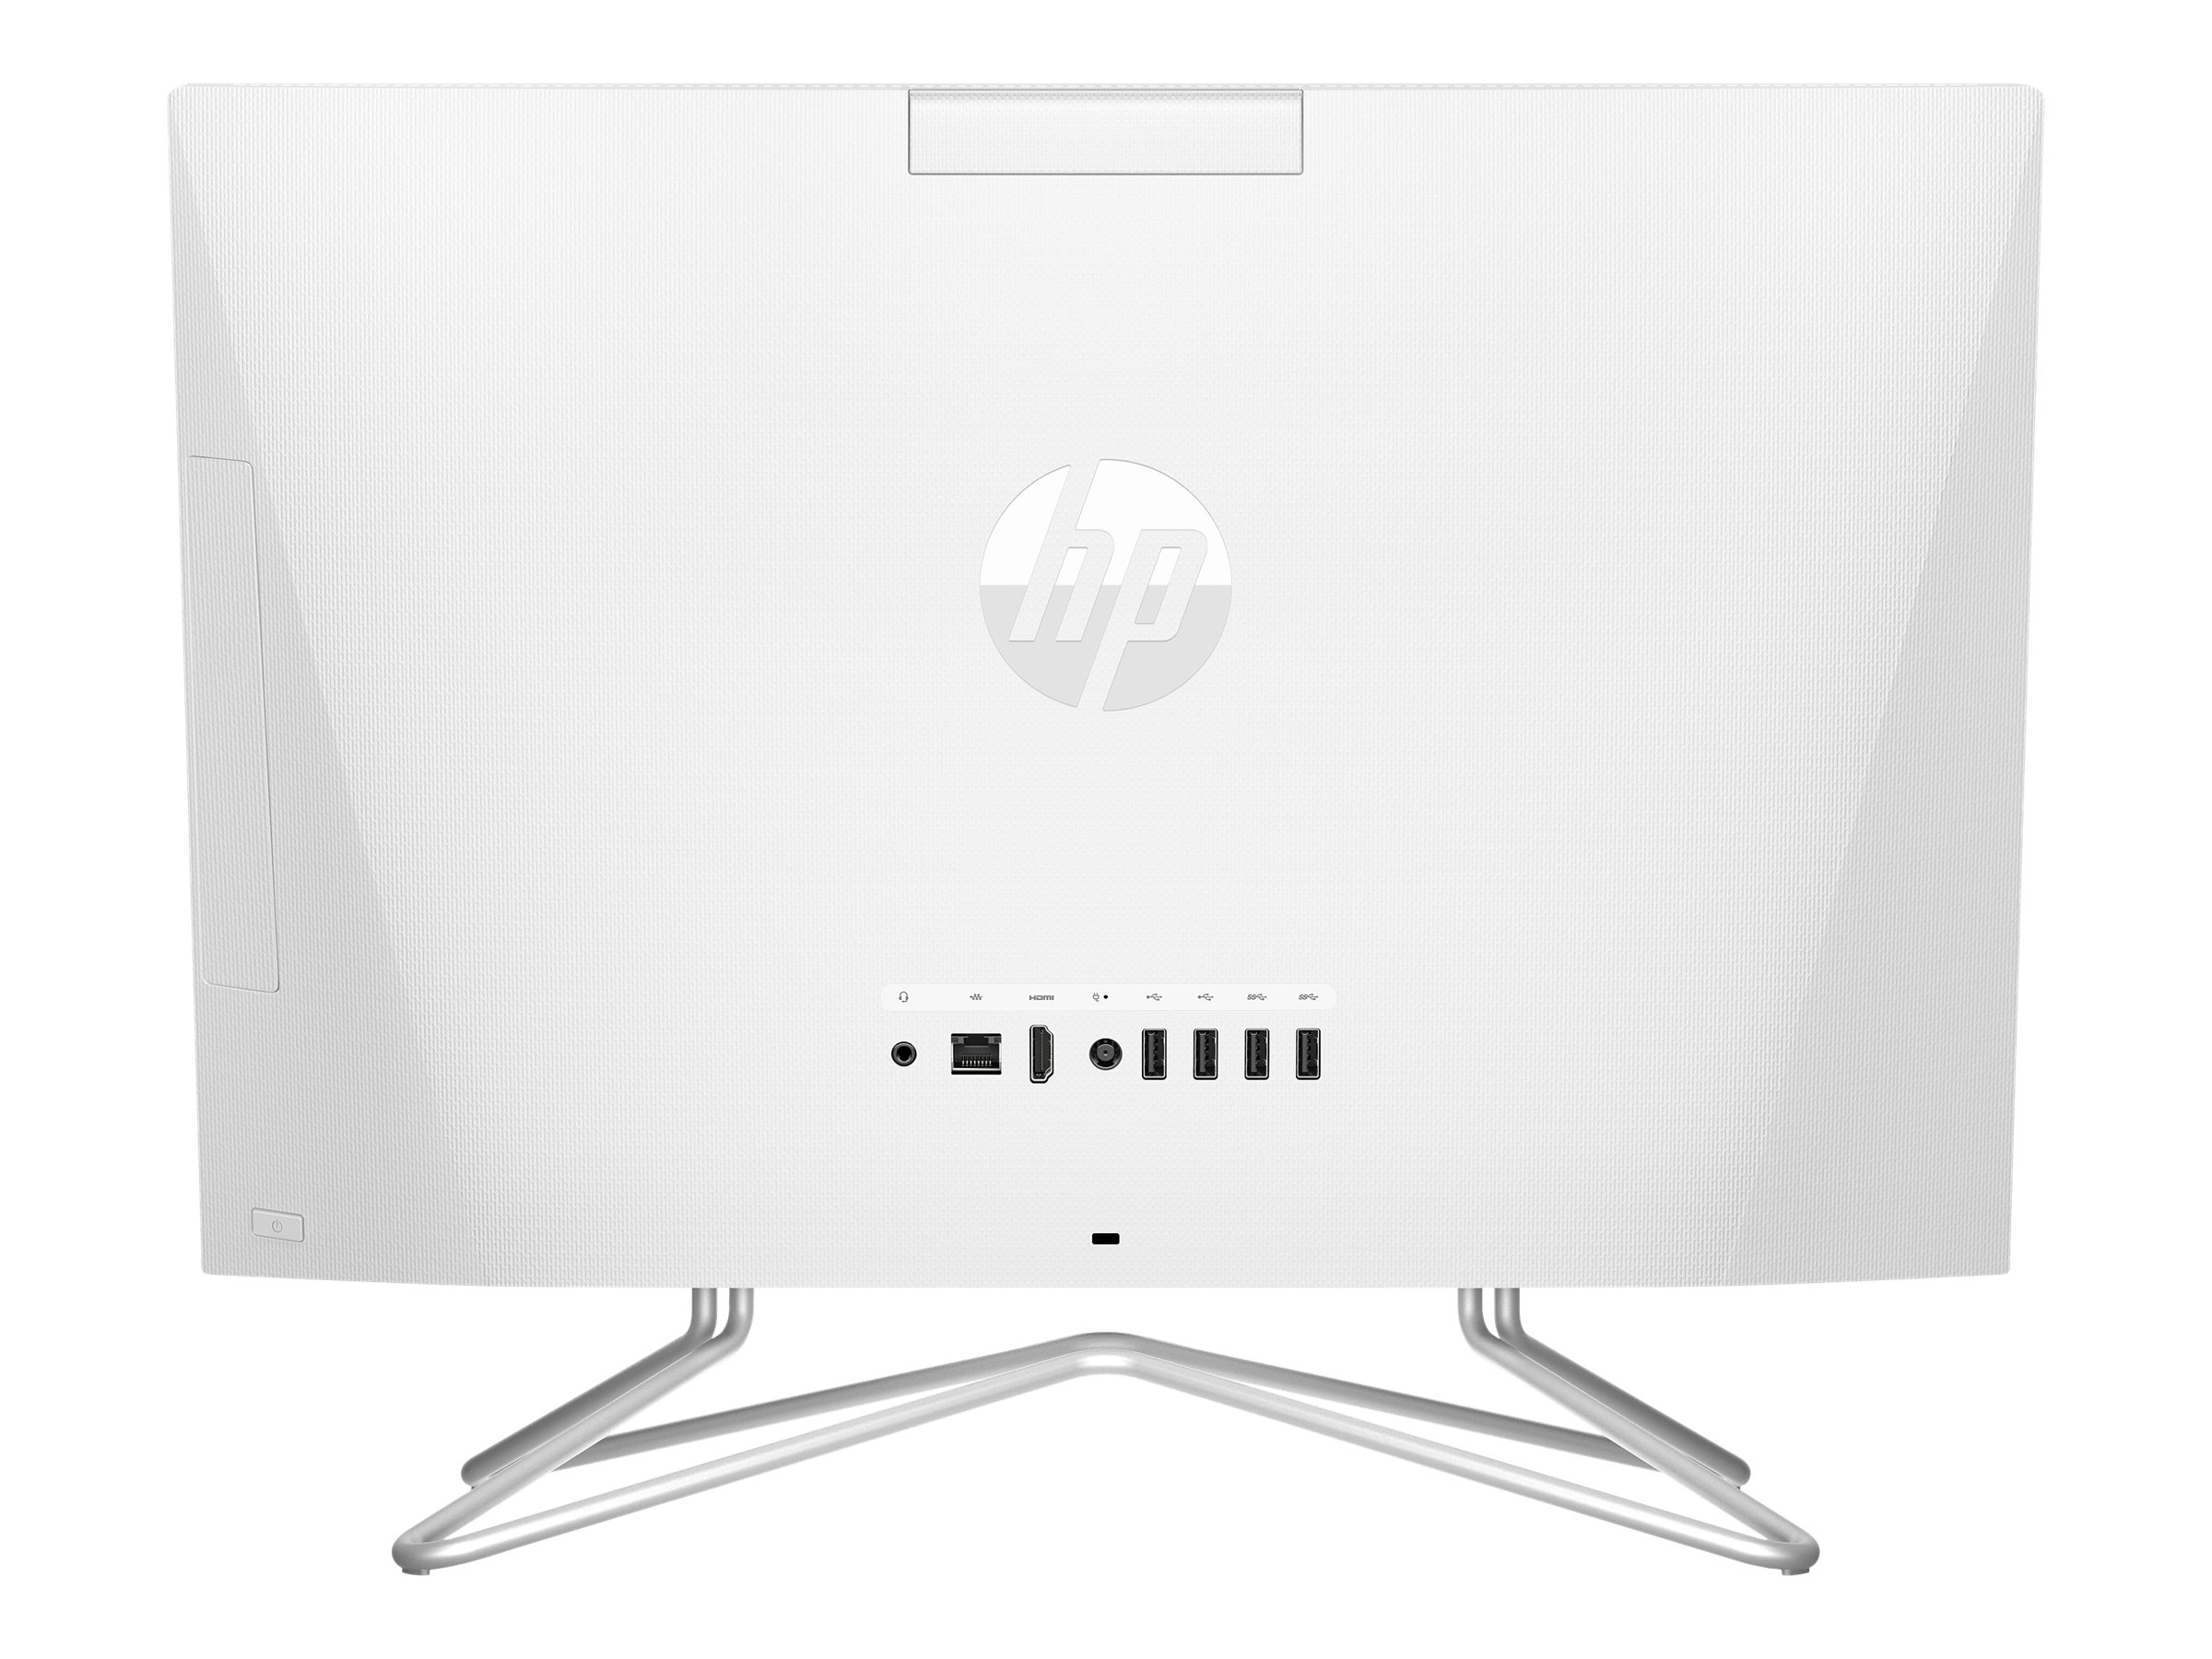 HP 22-df0097nf - Tout-en-un - Core i3 1005G1 / 1.2 GHz - RAM 4 Go - SSD 128 Go - TLC, HDD 1 To - UHD Graphics - Gigabit Ethernet LAN sans fil: - 802.11a/b/g/n/ac, Bluetooth 4.2 - Win 10 Familiale 64 bits - moniteur : LED 21.5" 1920 x 1080 (Full HD) - clavier : Français - blanc neige - avec Extension de la garantie combinée enlèvement et retour de HP pendant 2 ans pour les ordinateurs de bureau de milieu de gamme - 1T0J9EA#ABF - Ordinateurs de bureau